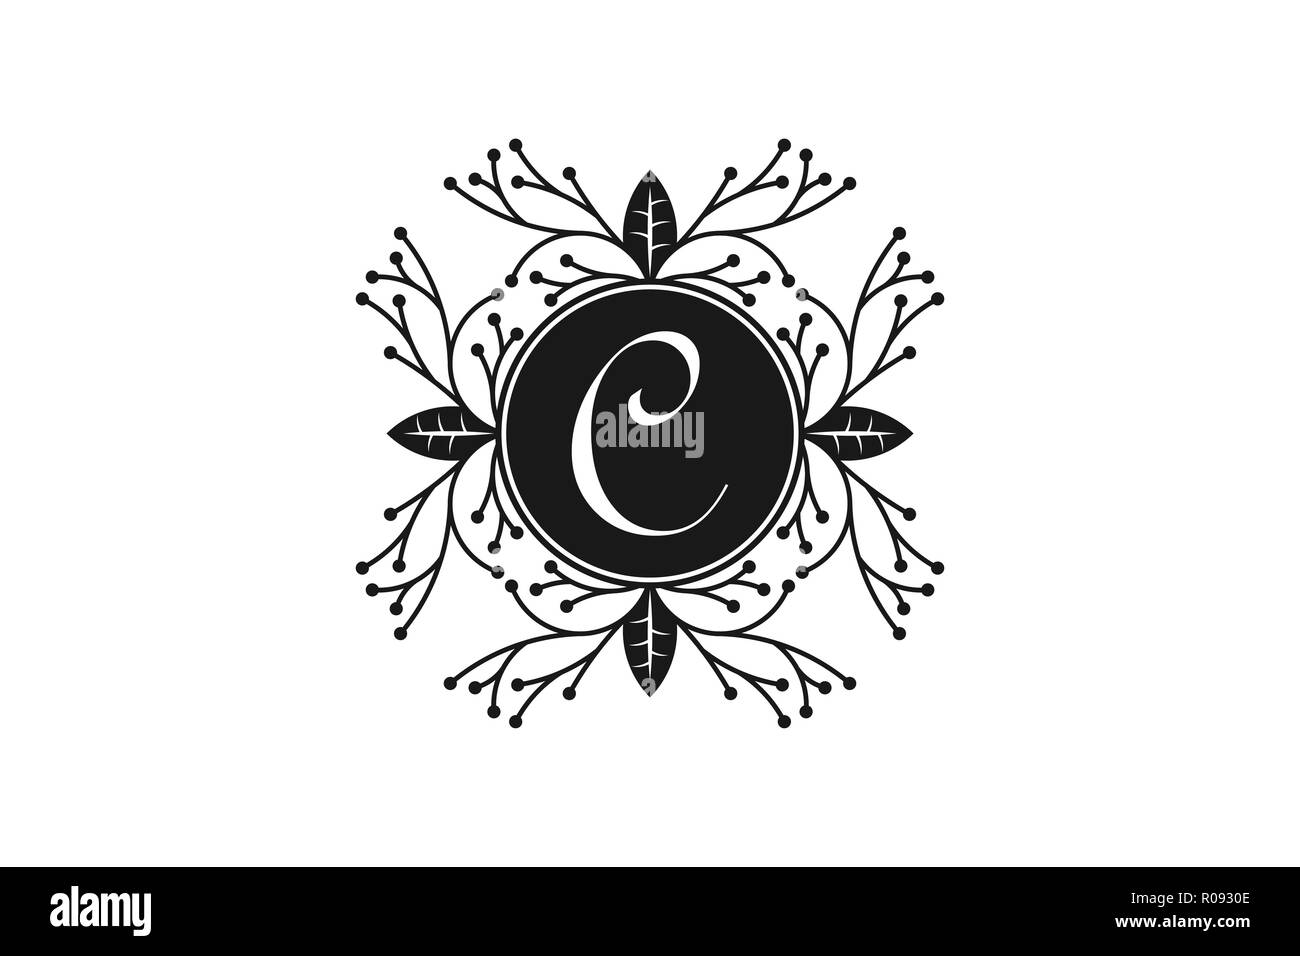 Elegant Floral Monogram Letter C For Wedding And Boutique Logo